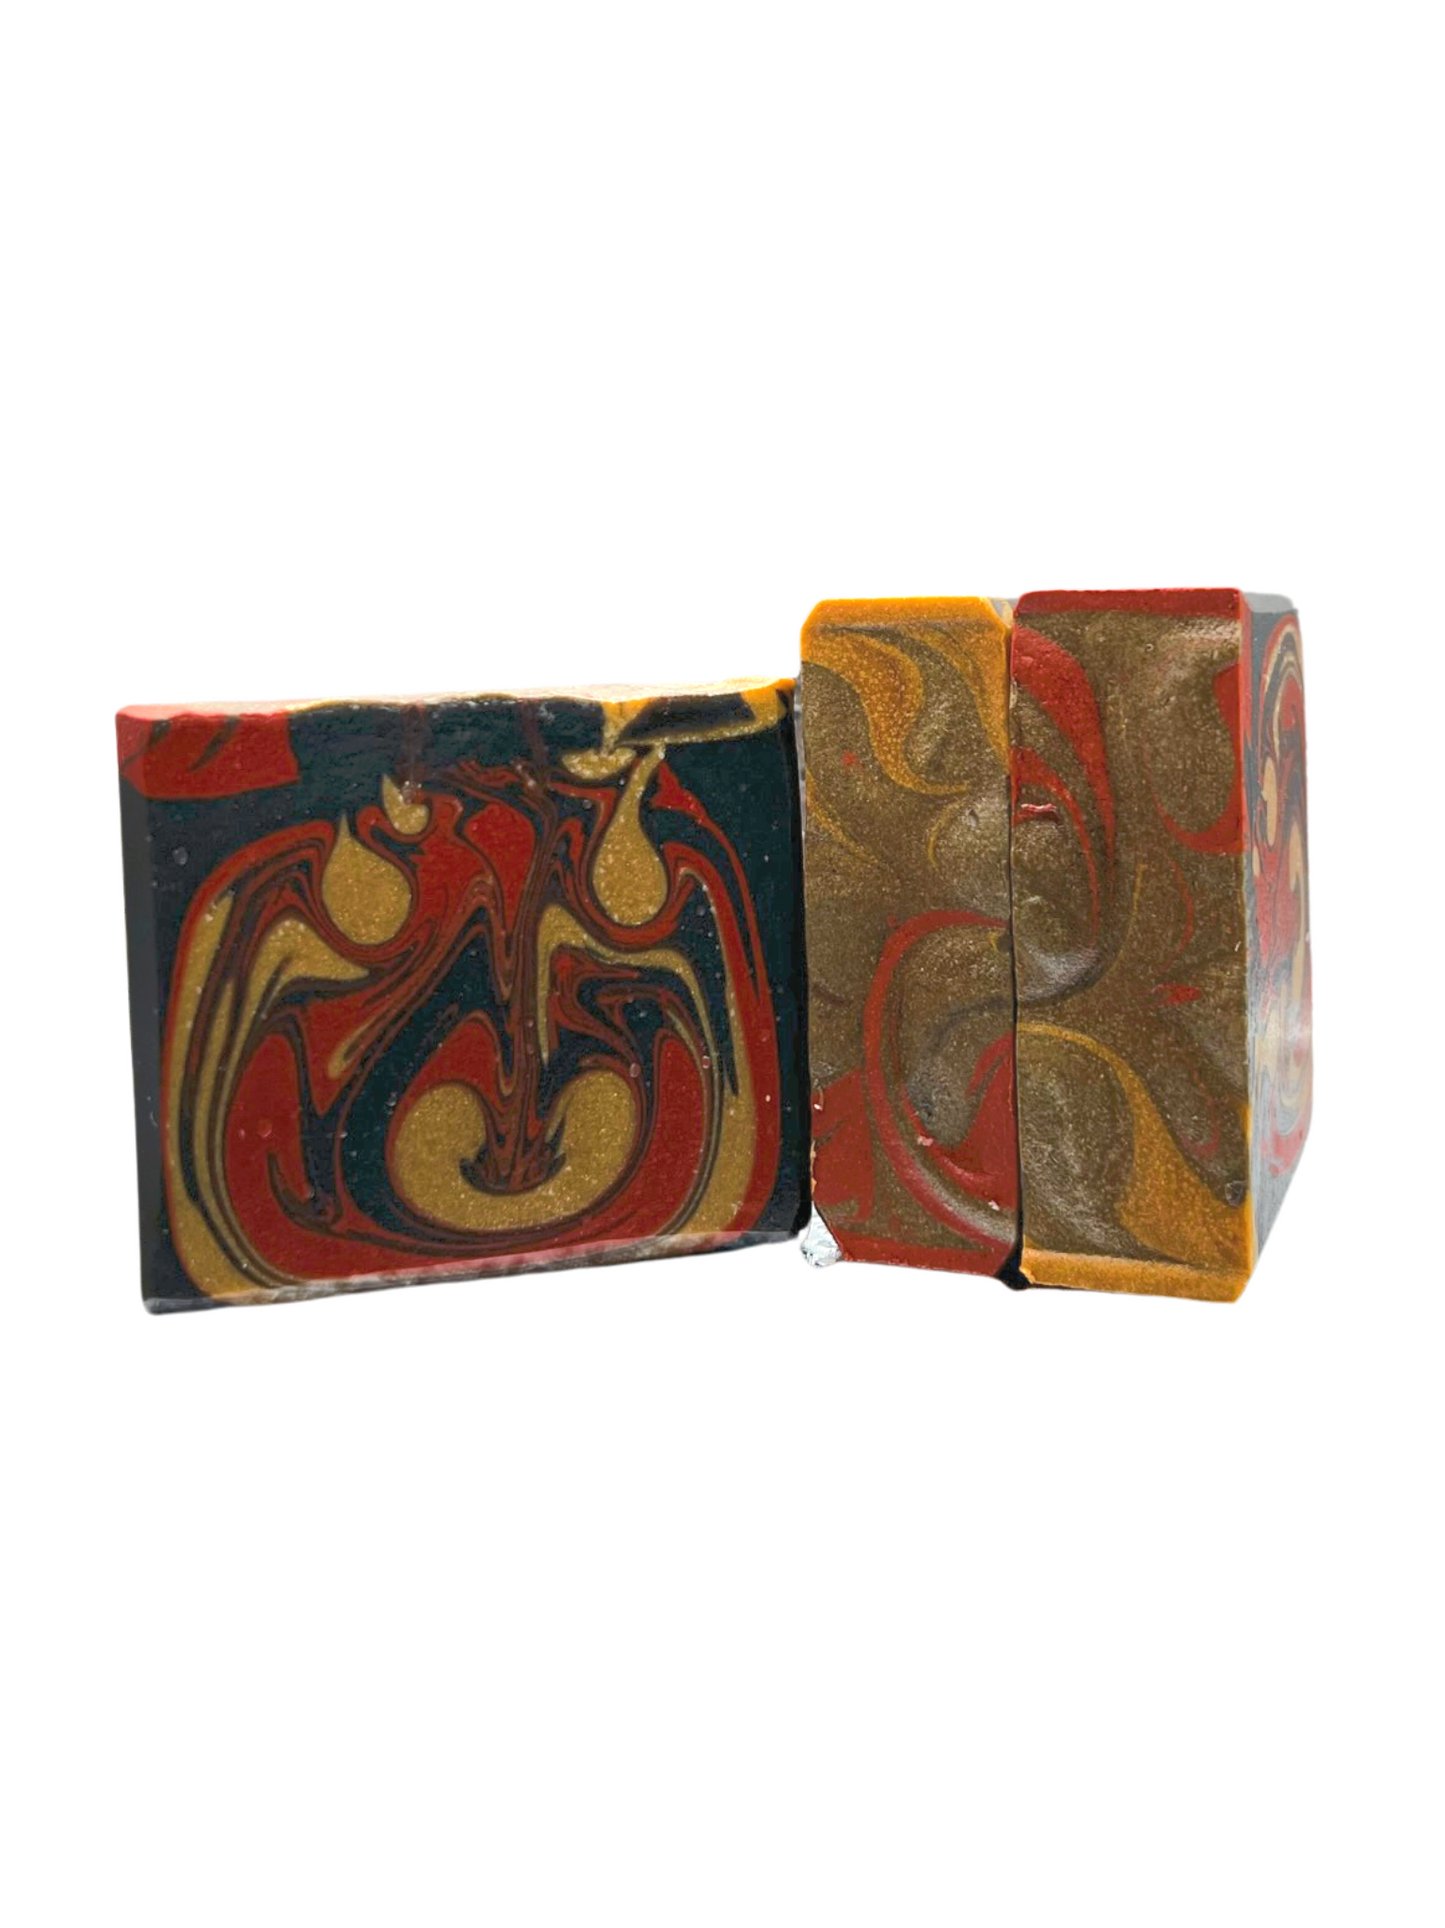 Dragon's Blood Artisan Soap